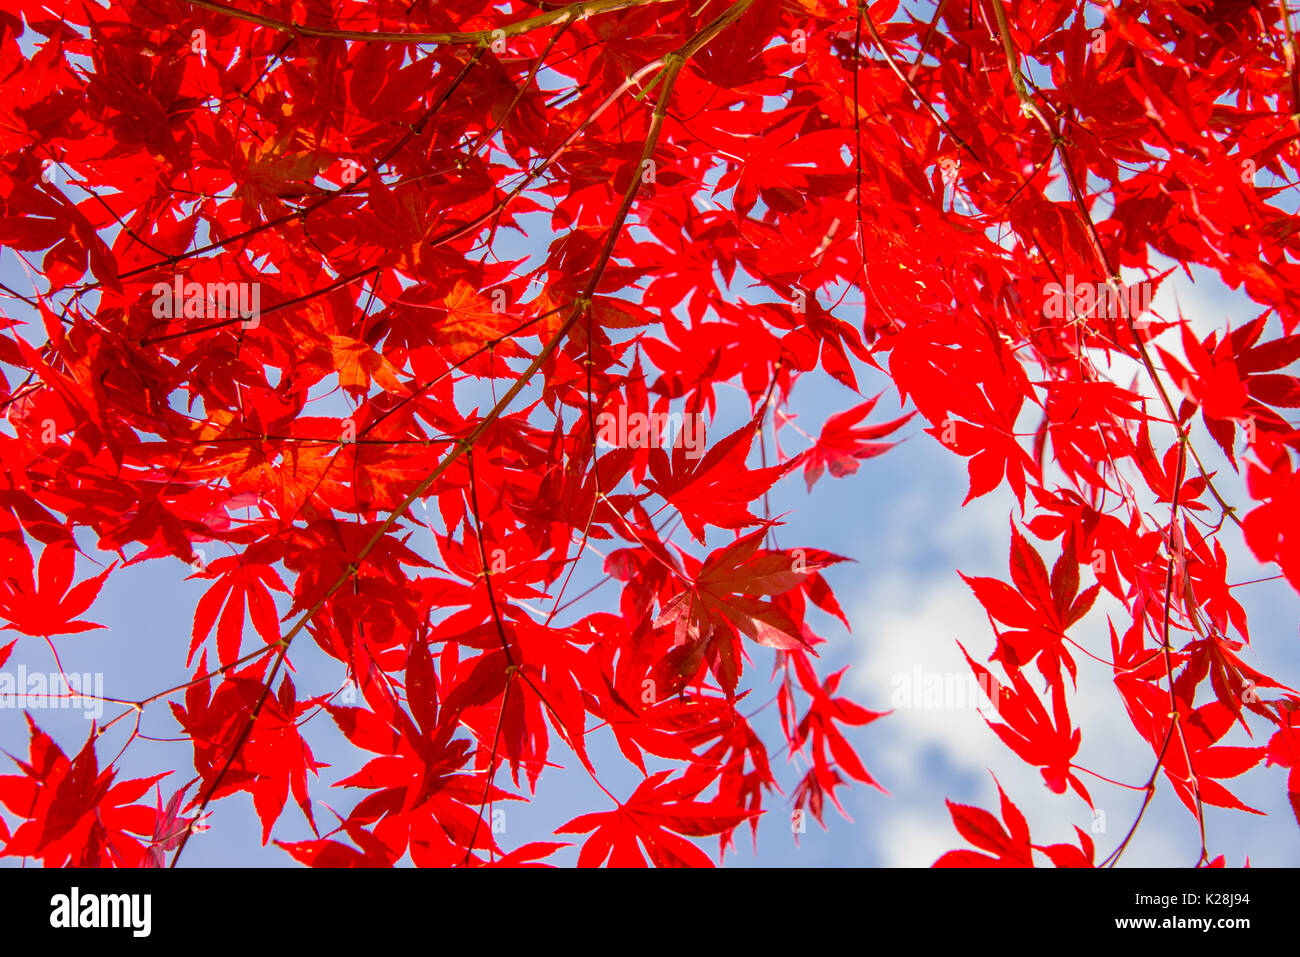 Feuilles d'érable d'automne coloré rouge, fond de ciel bleu - concept d'automne Banque D'Images